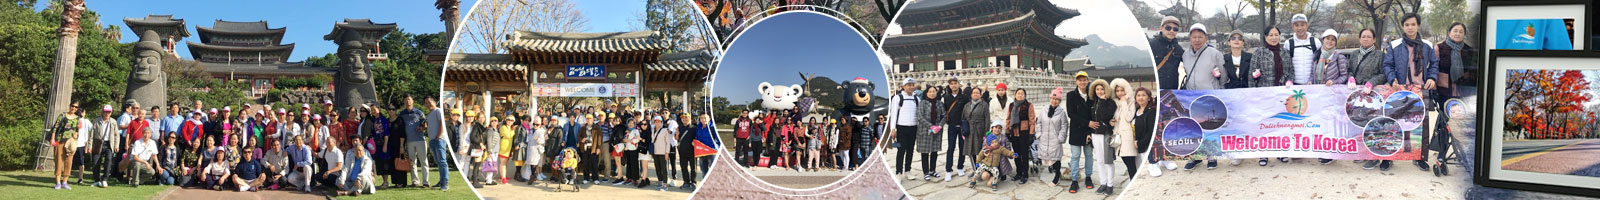 Tour Du lịch đi Hàn Quốc 6N5Đ giá rẻ - Khởi hành từ TPHCM